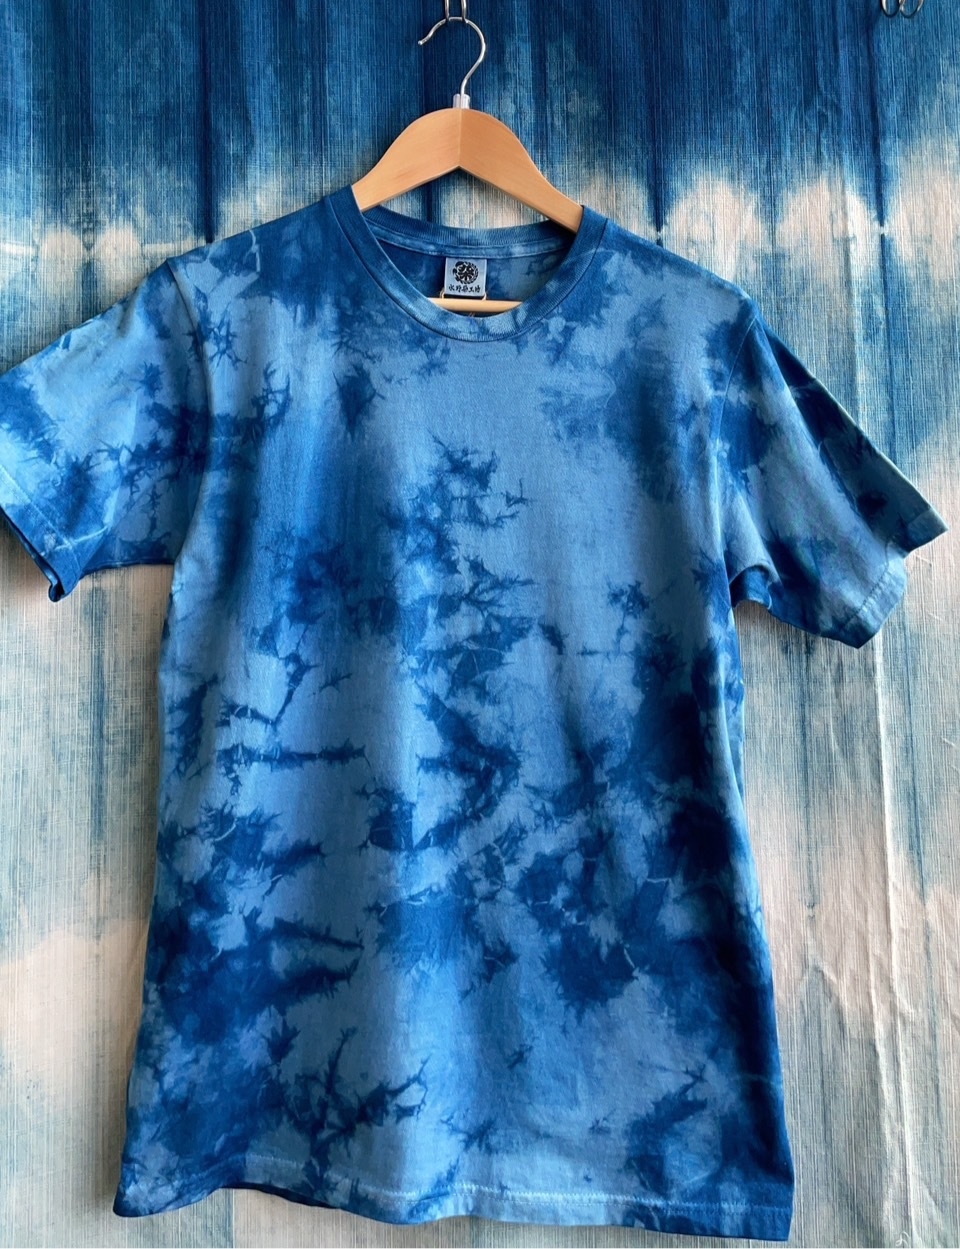 【藍染め体験（ストールorTシャツ）プラン】丘のまち美瑛町で 美瑛ブルーに染まる藍染め体験プラン